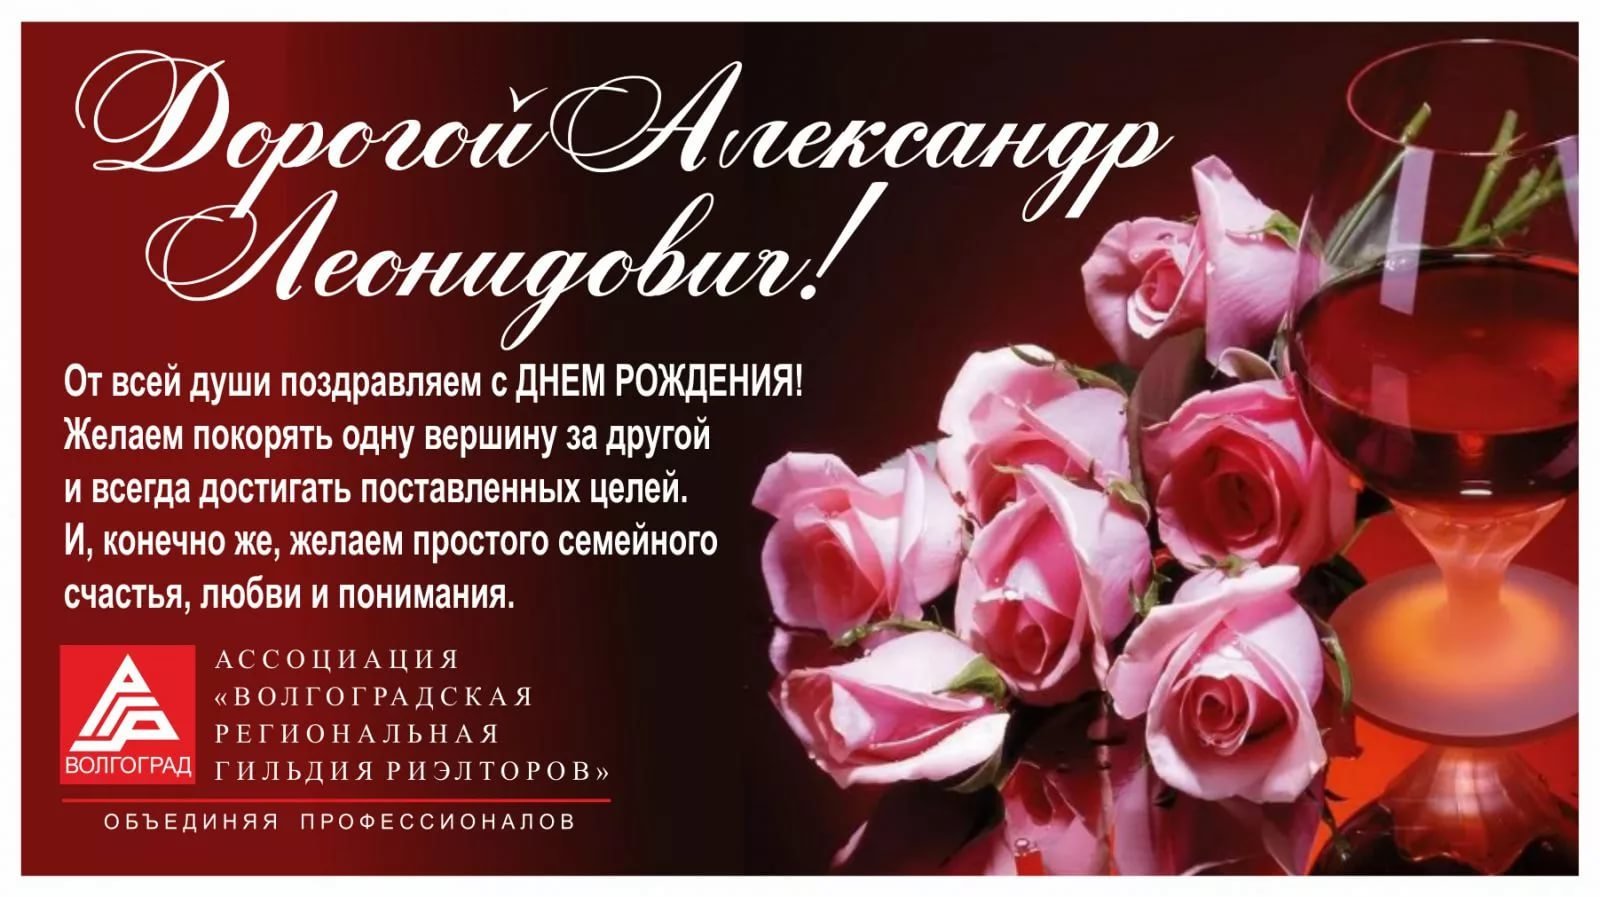 Голосовые аудио поздравления Александру с Днём Рождения: от Путина и музыкальные